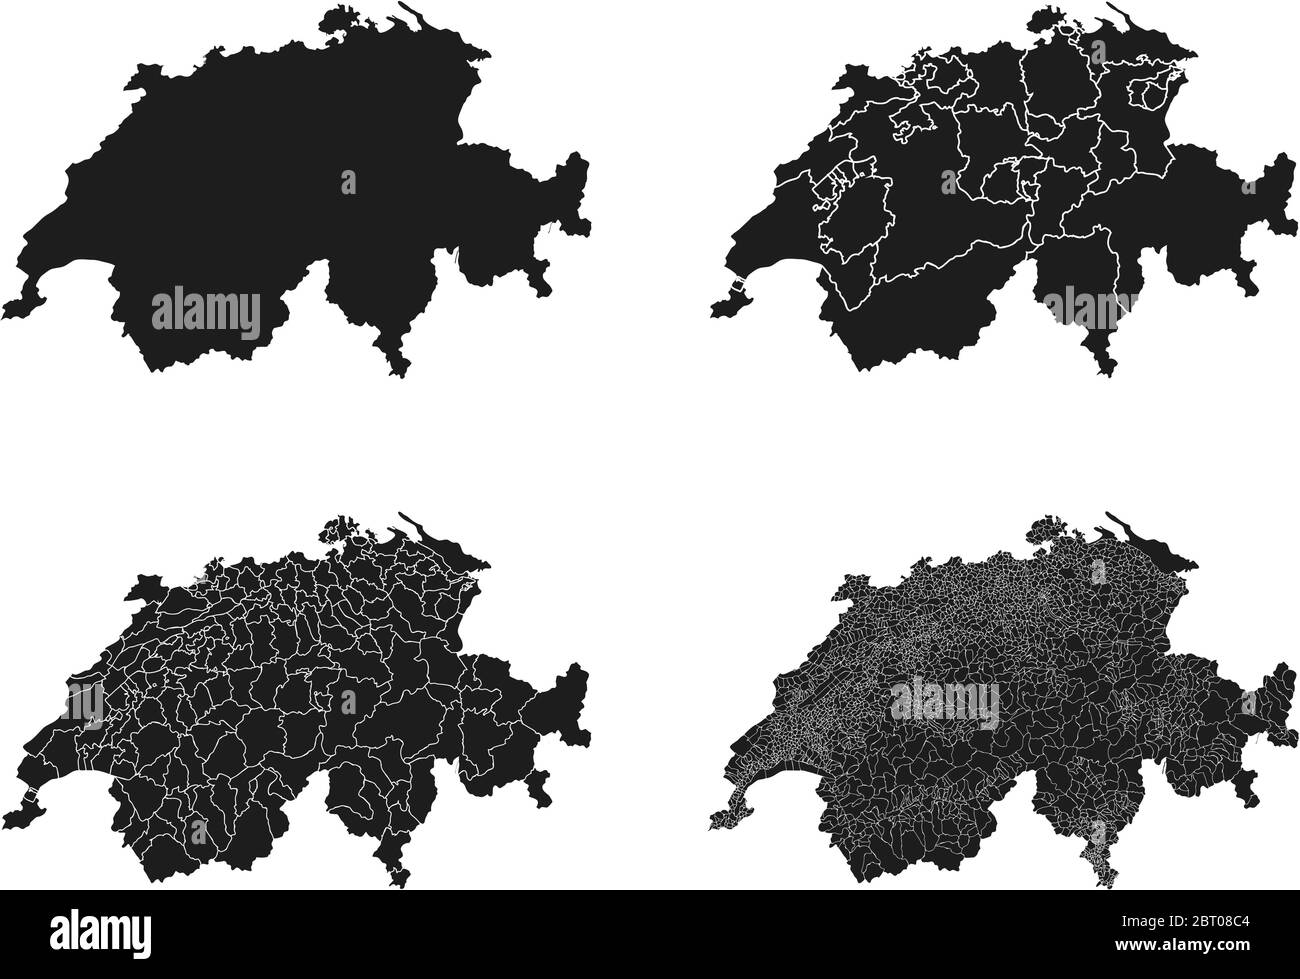 Svizzera mappe vettoriali con regioni amministrative, comuni, dipartimenti, frontiere Illustrazione Vettoriale